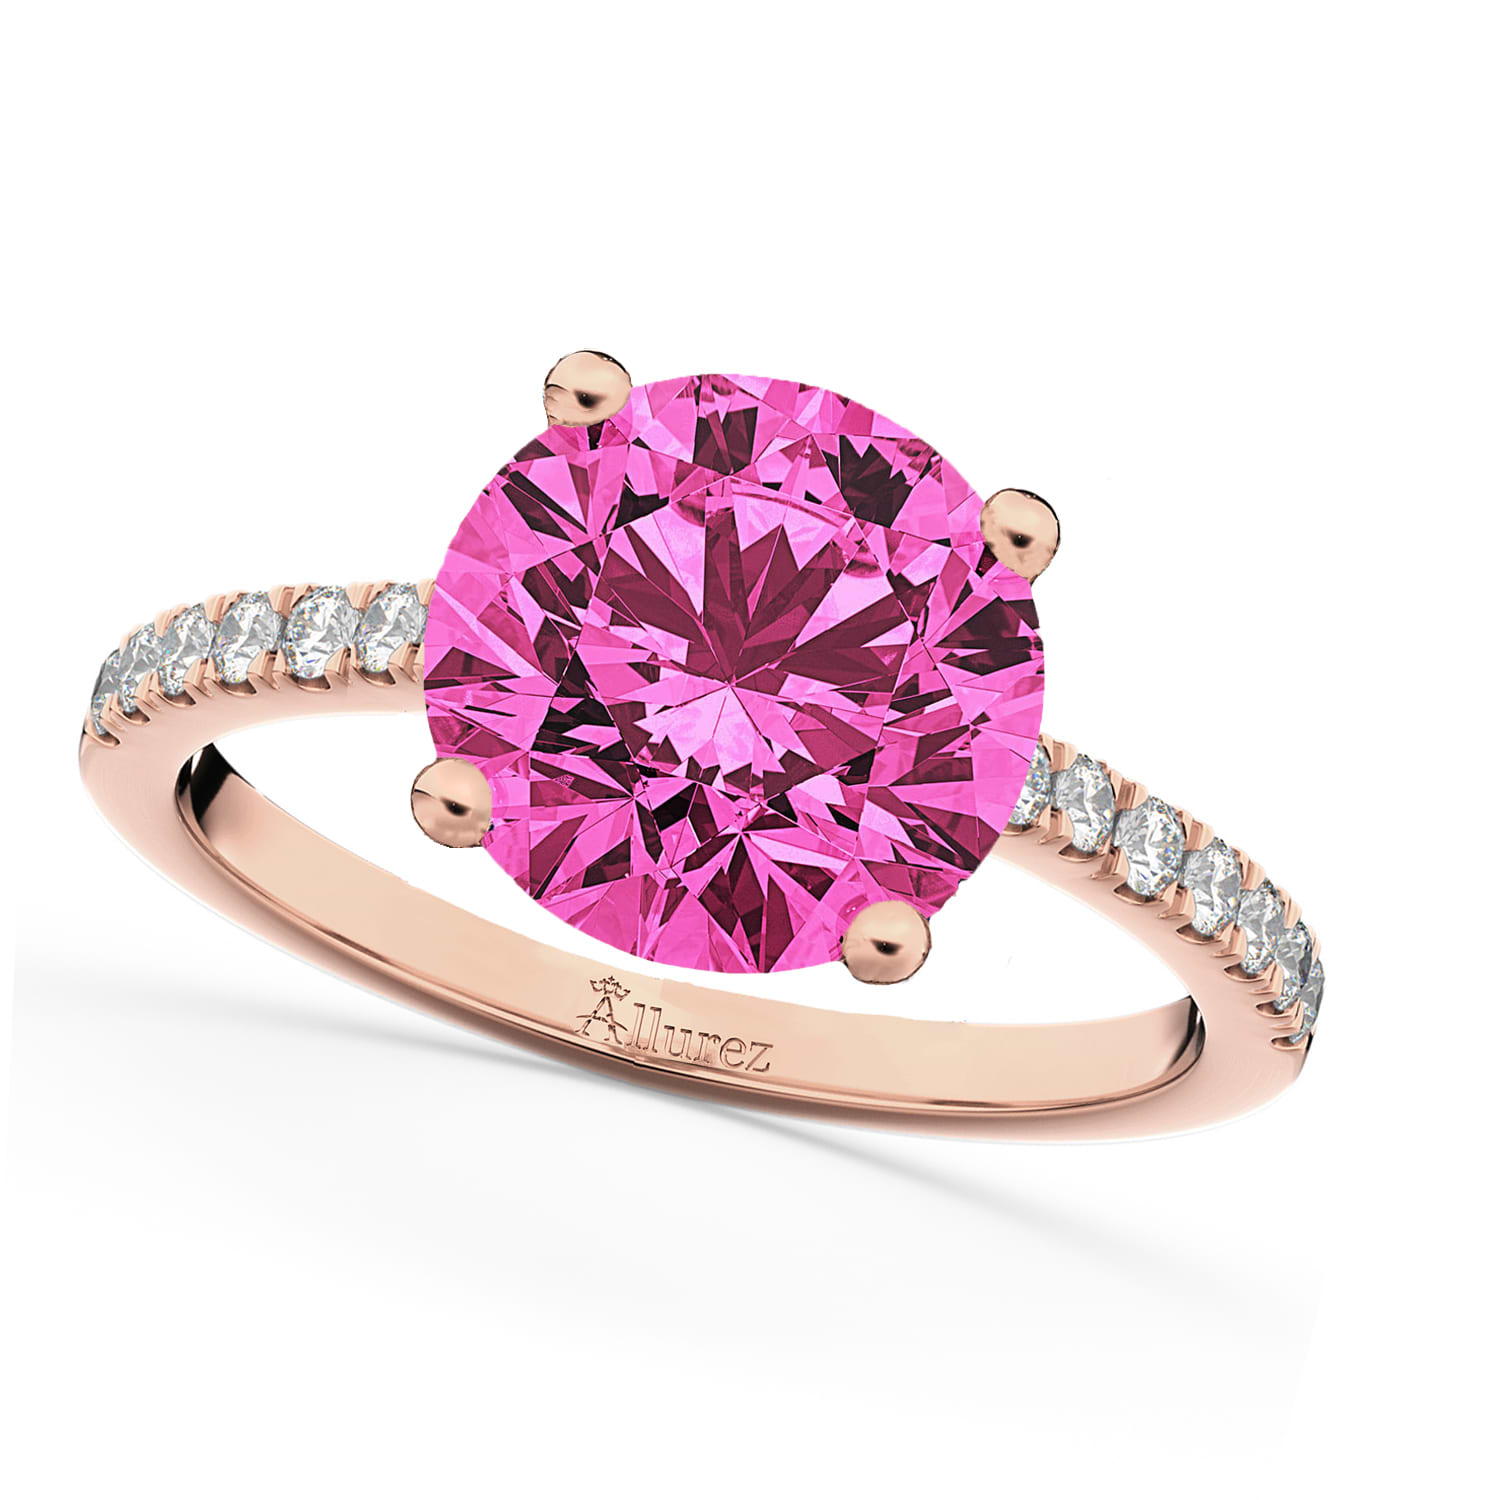 Pink Tourmaline & Diamond Engagement Ring 14K Rose Gold 2.21ct